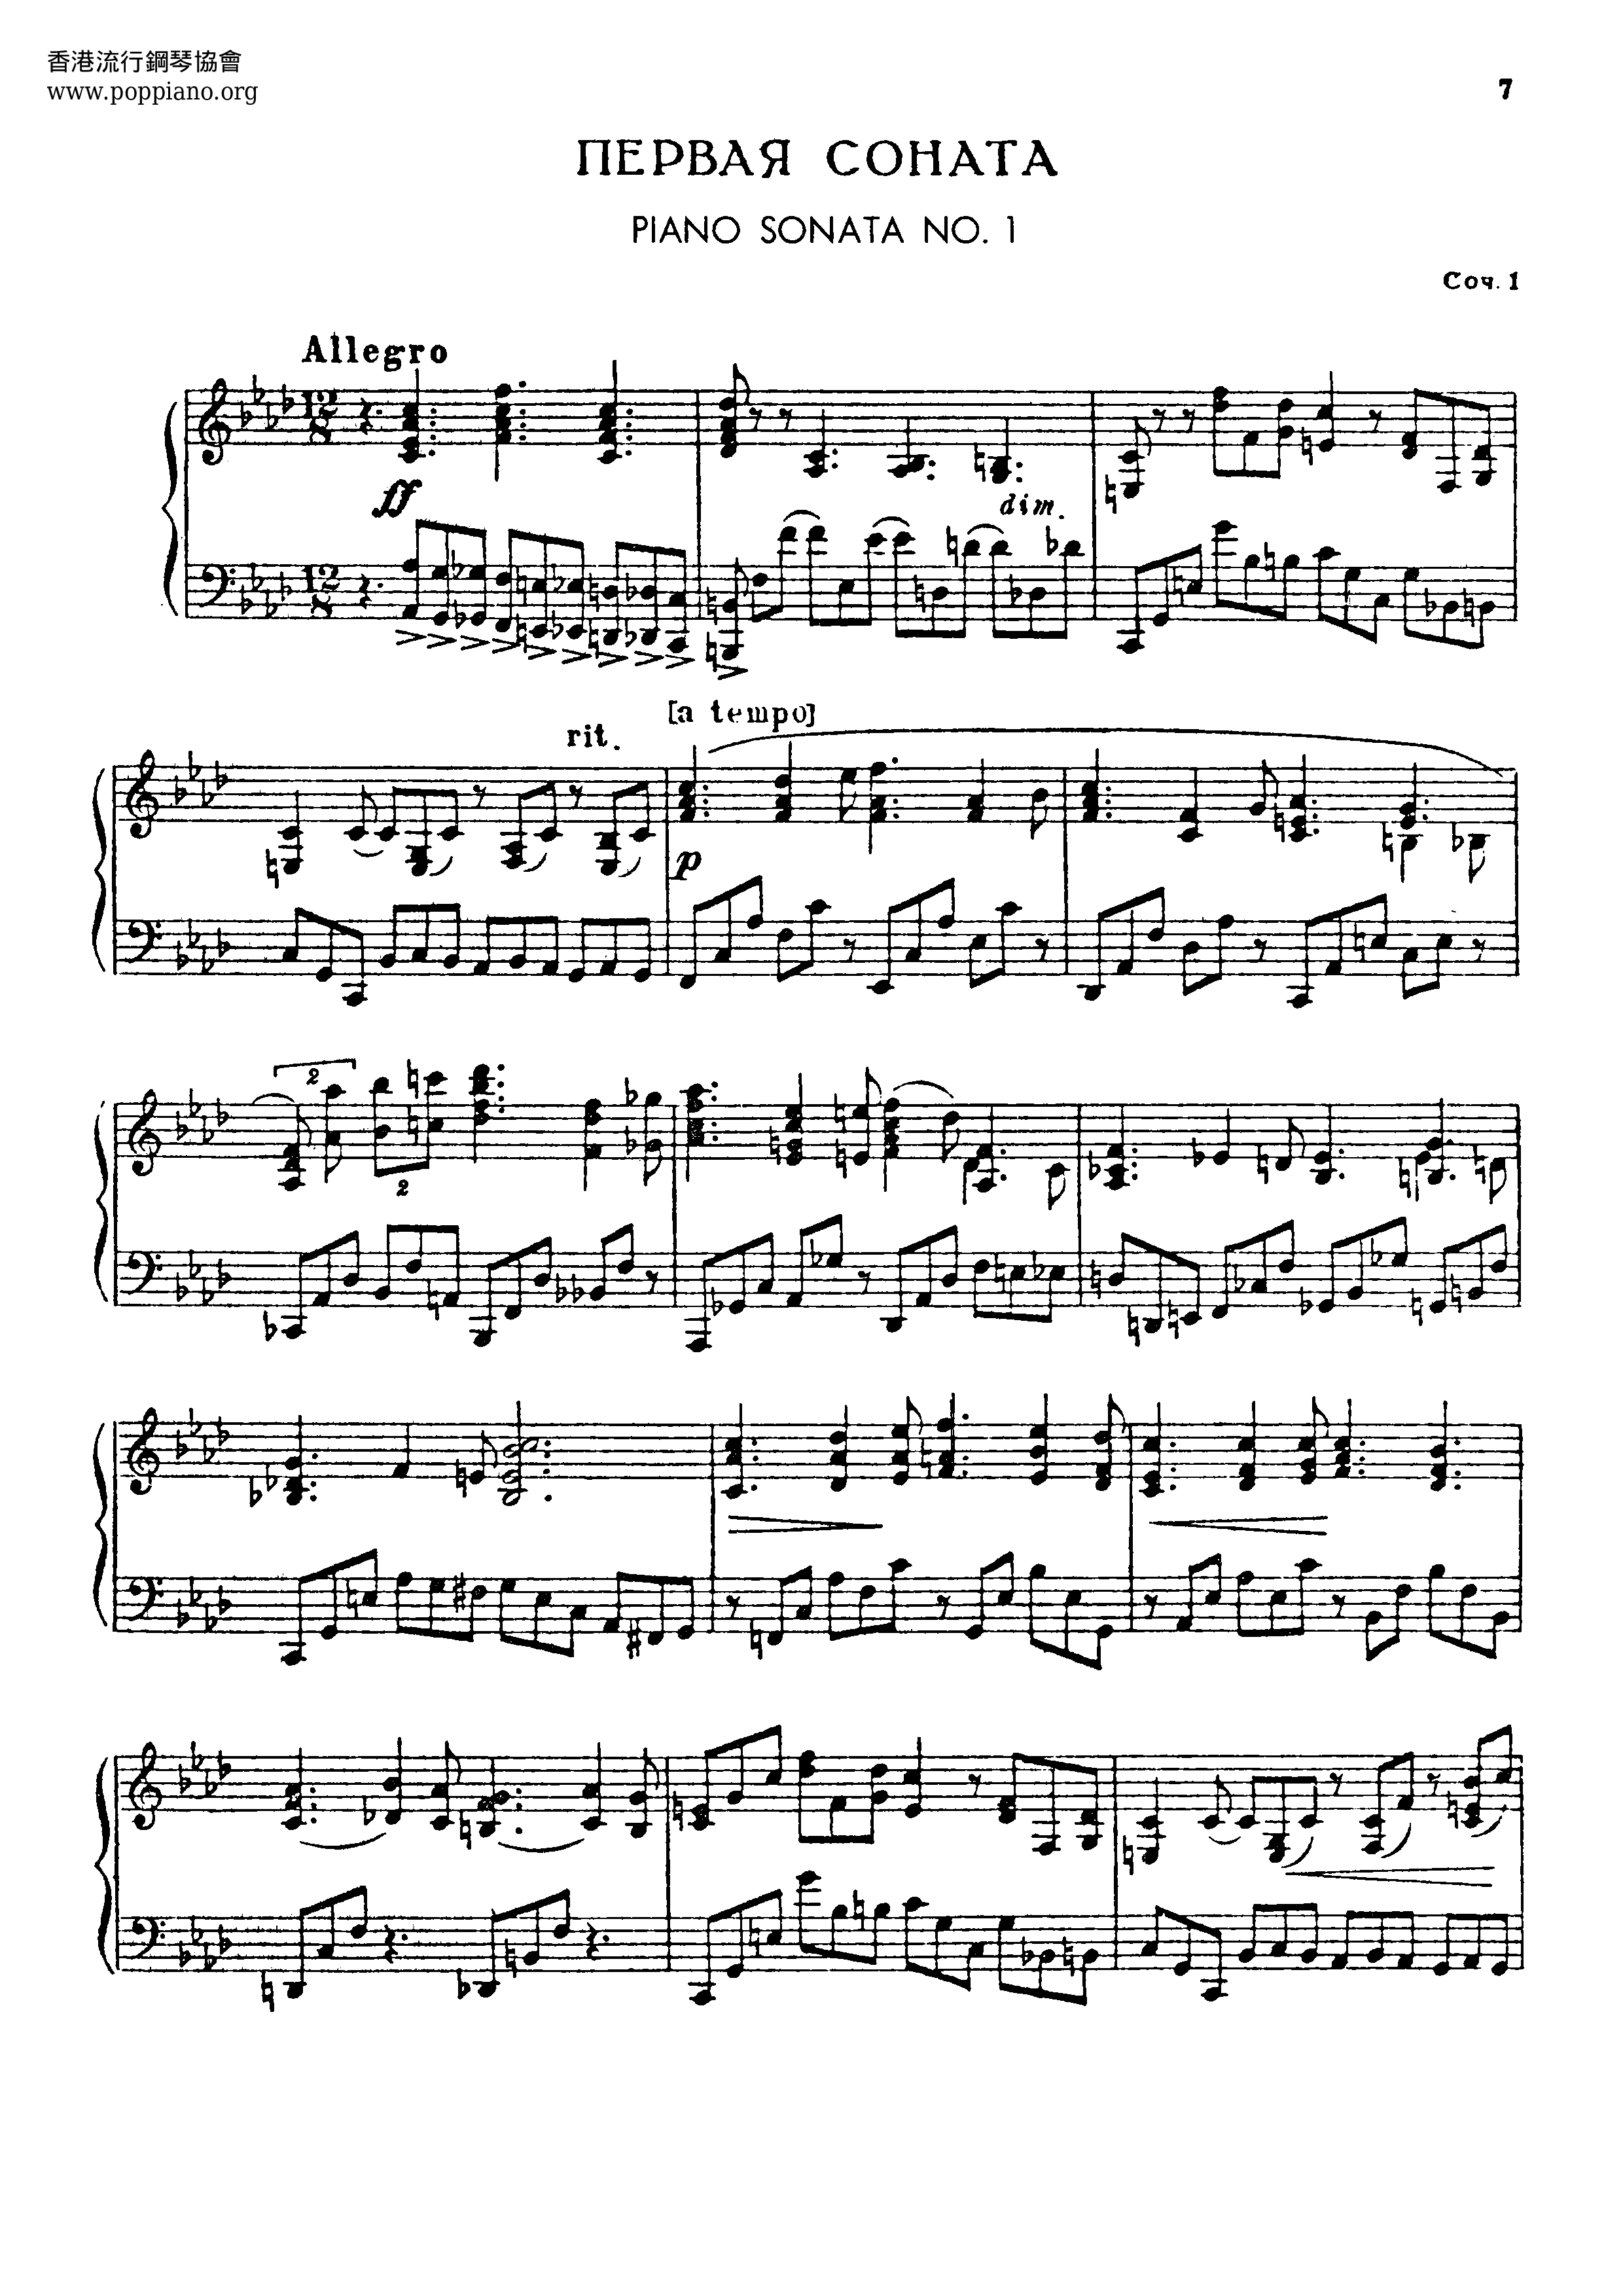 Piano Sonata No.1 Score